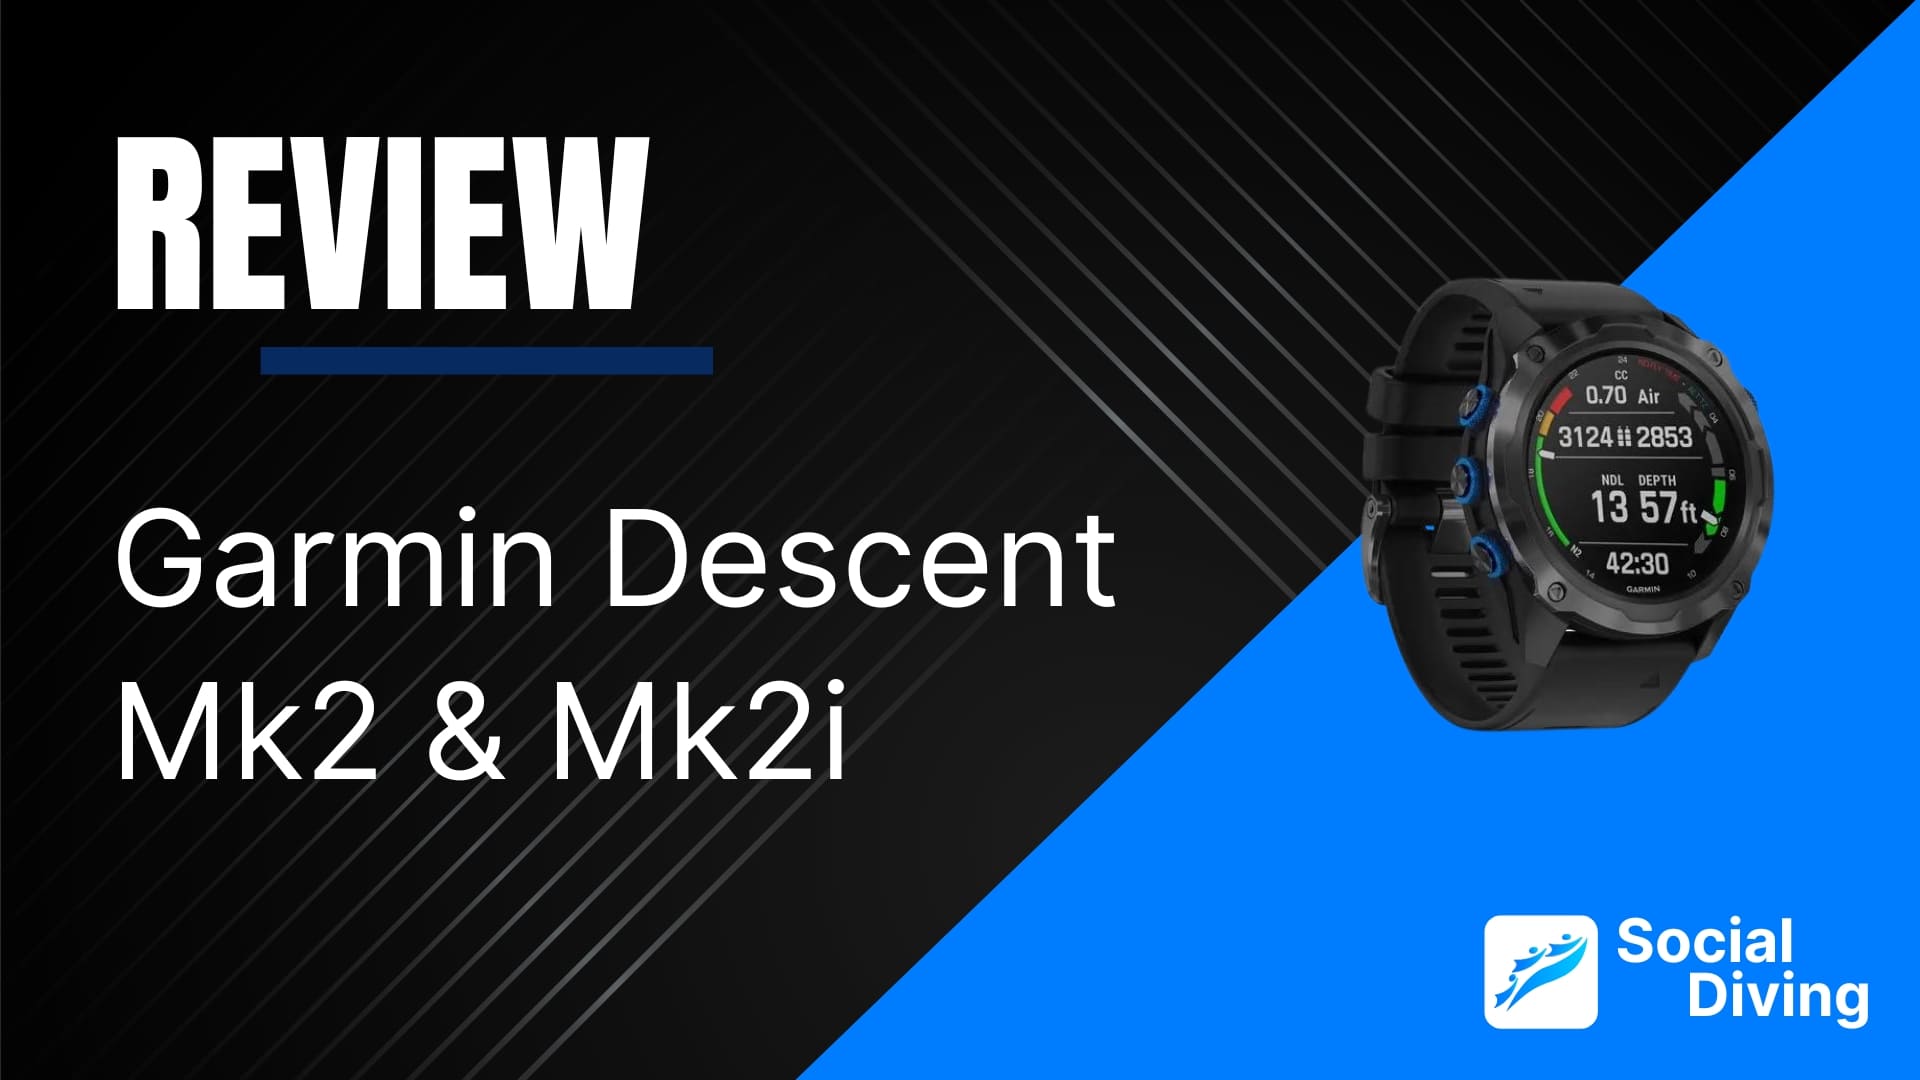 Garmin Descent Mk2 & Mk2i review